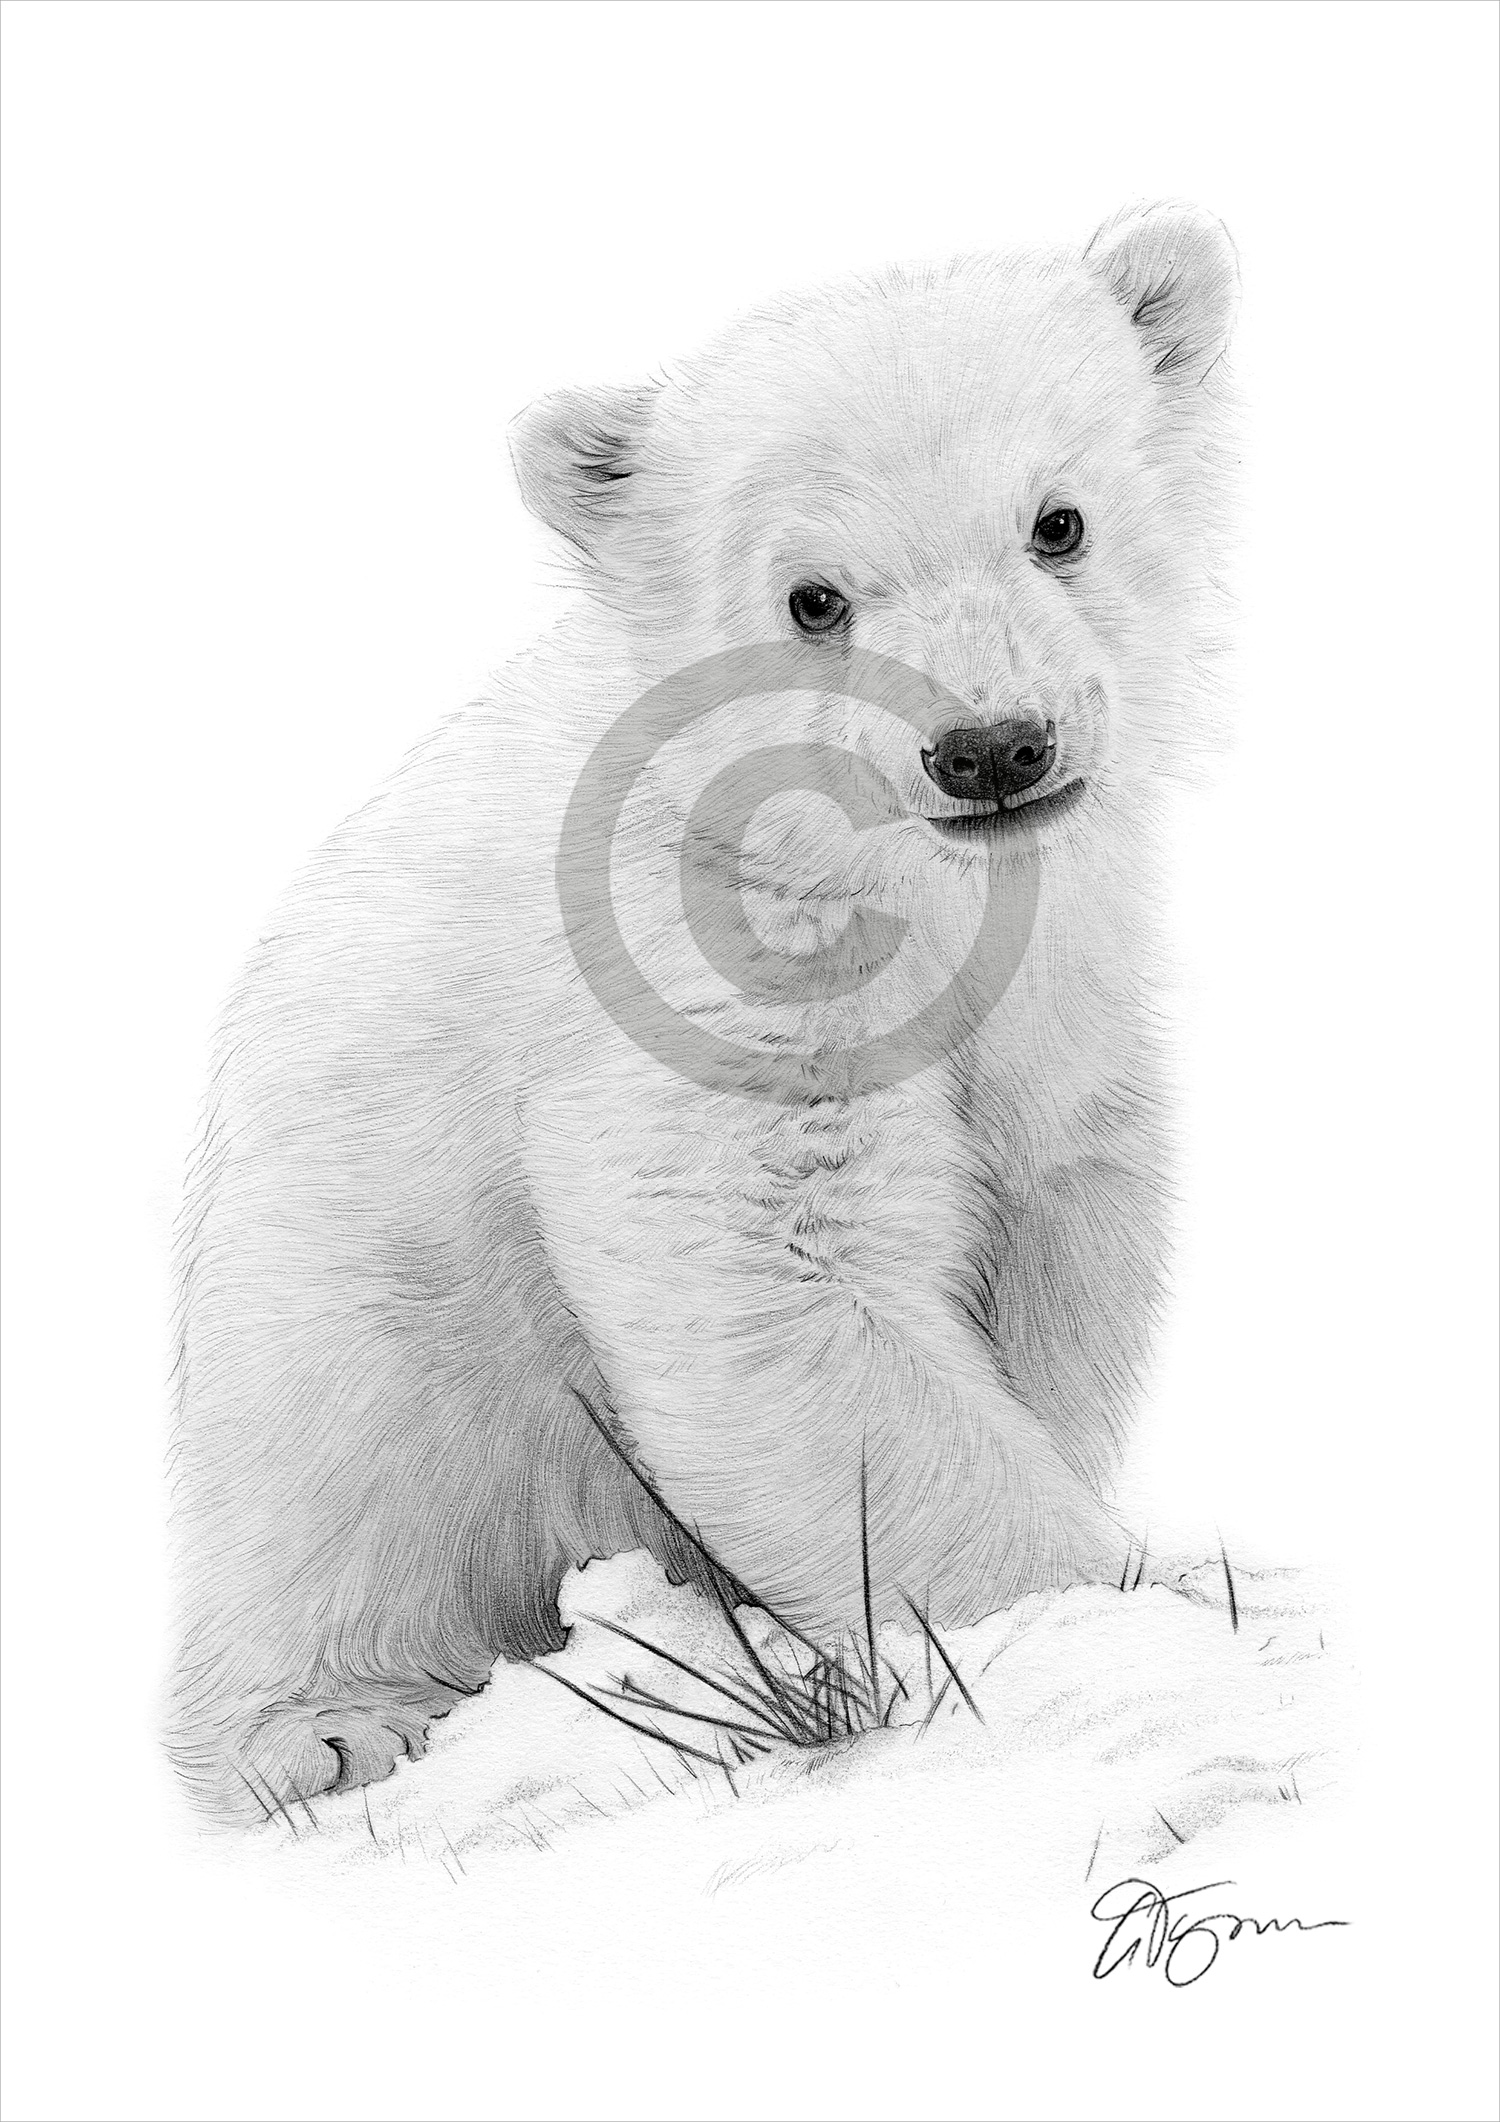 Pencil drawing of a polar bear cub by artist Gary Tymon